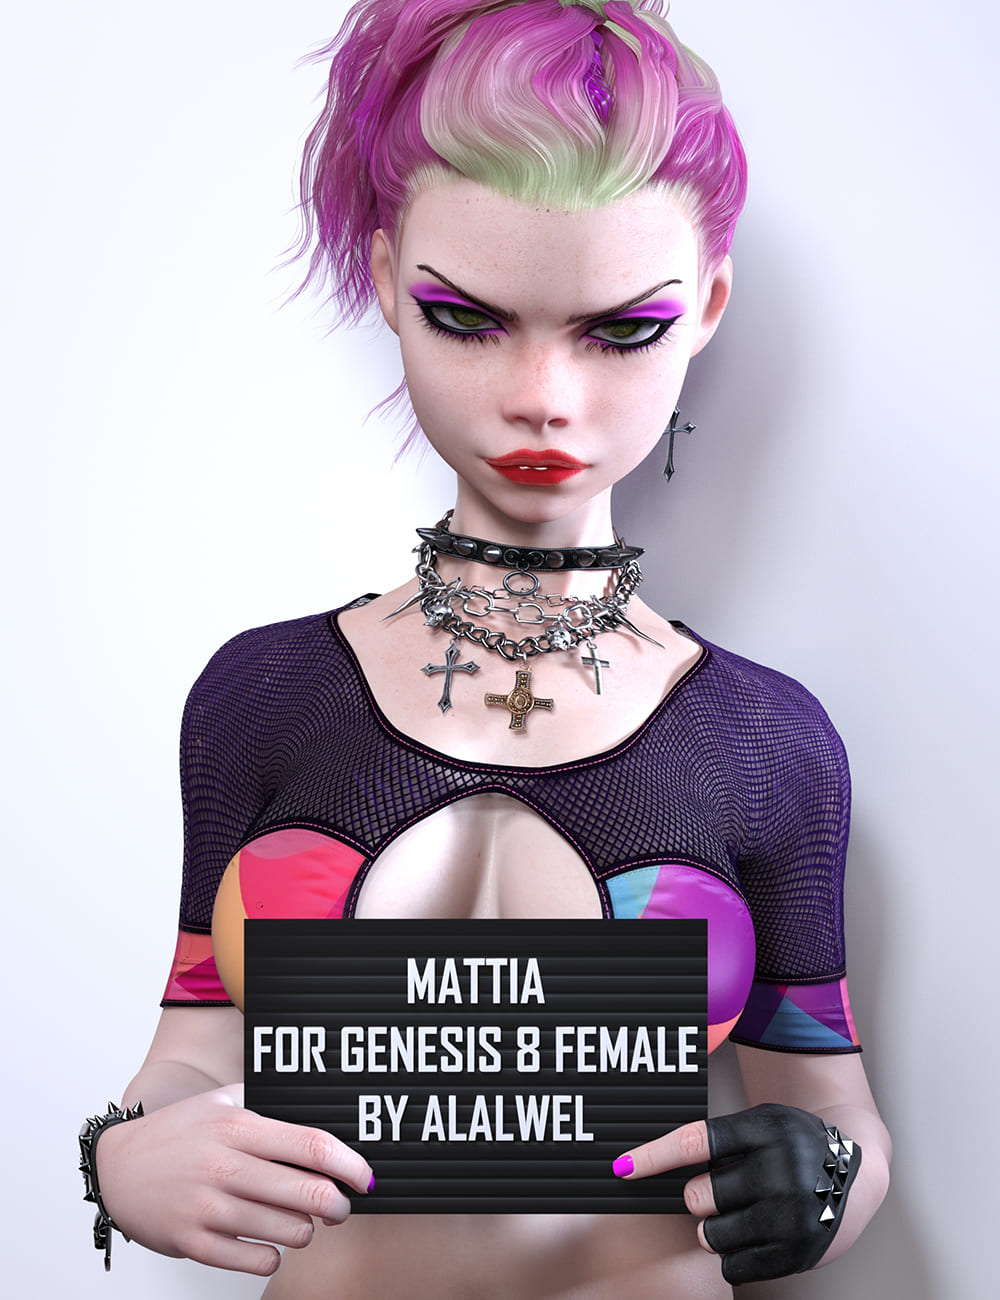 Mattia for Genesis 8 Females_DAZ3D下载站